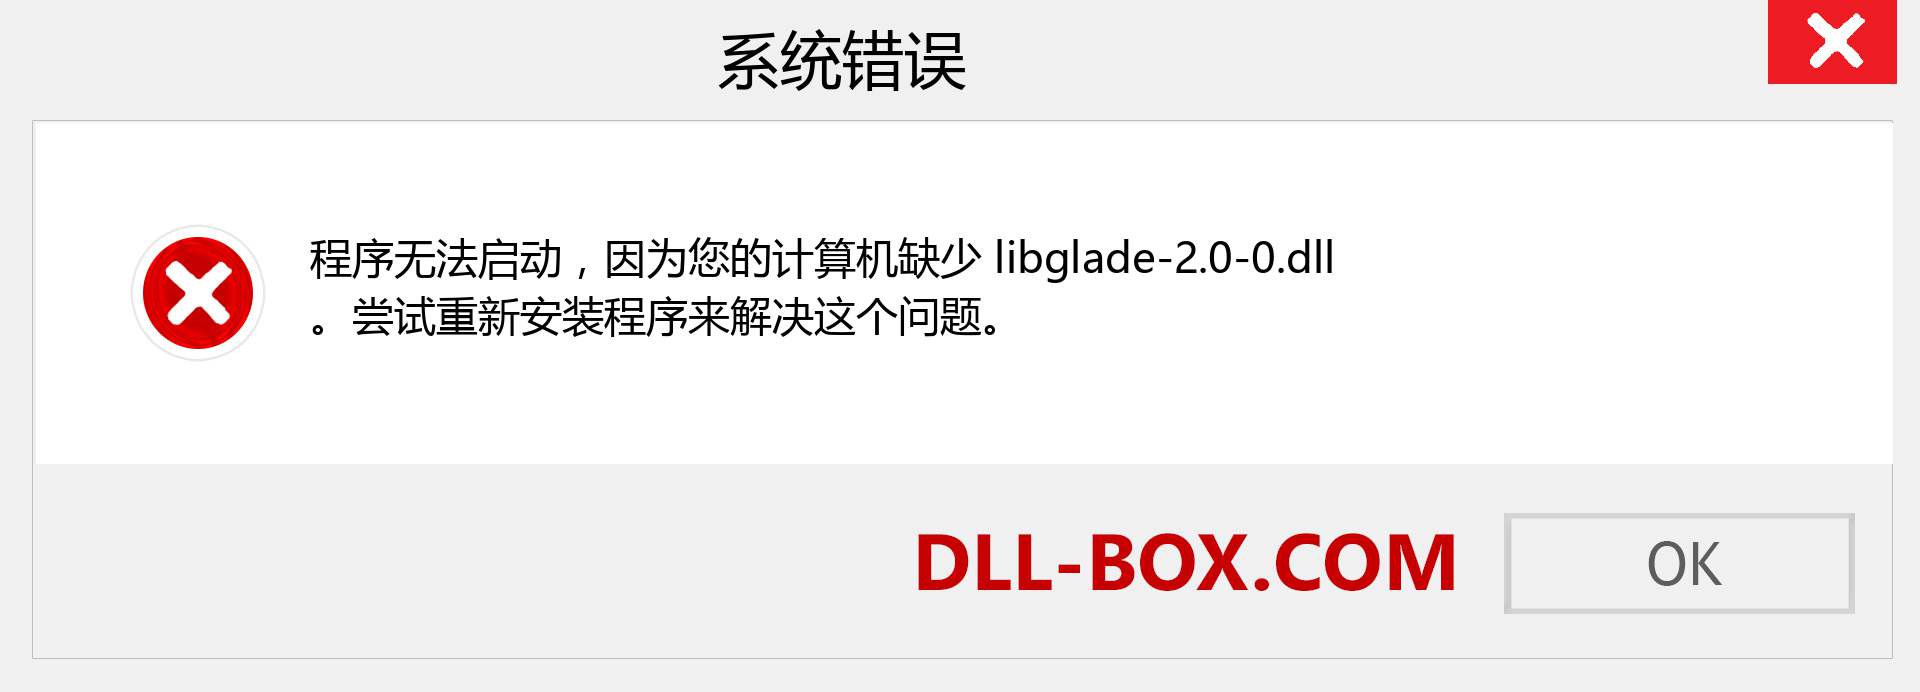 libglade-2.0-0.dll 文件丢失？。 适用于 Windows 7、8、10 的下载 - 修复 Windows、照片、图像上的 libglade-2.0-0 dll 丢失错误